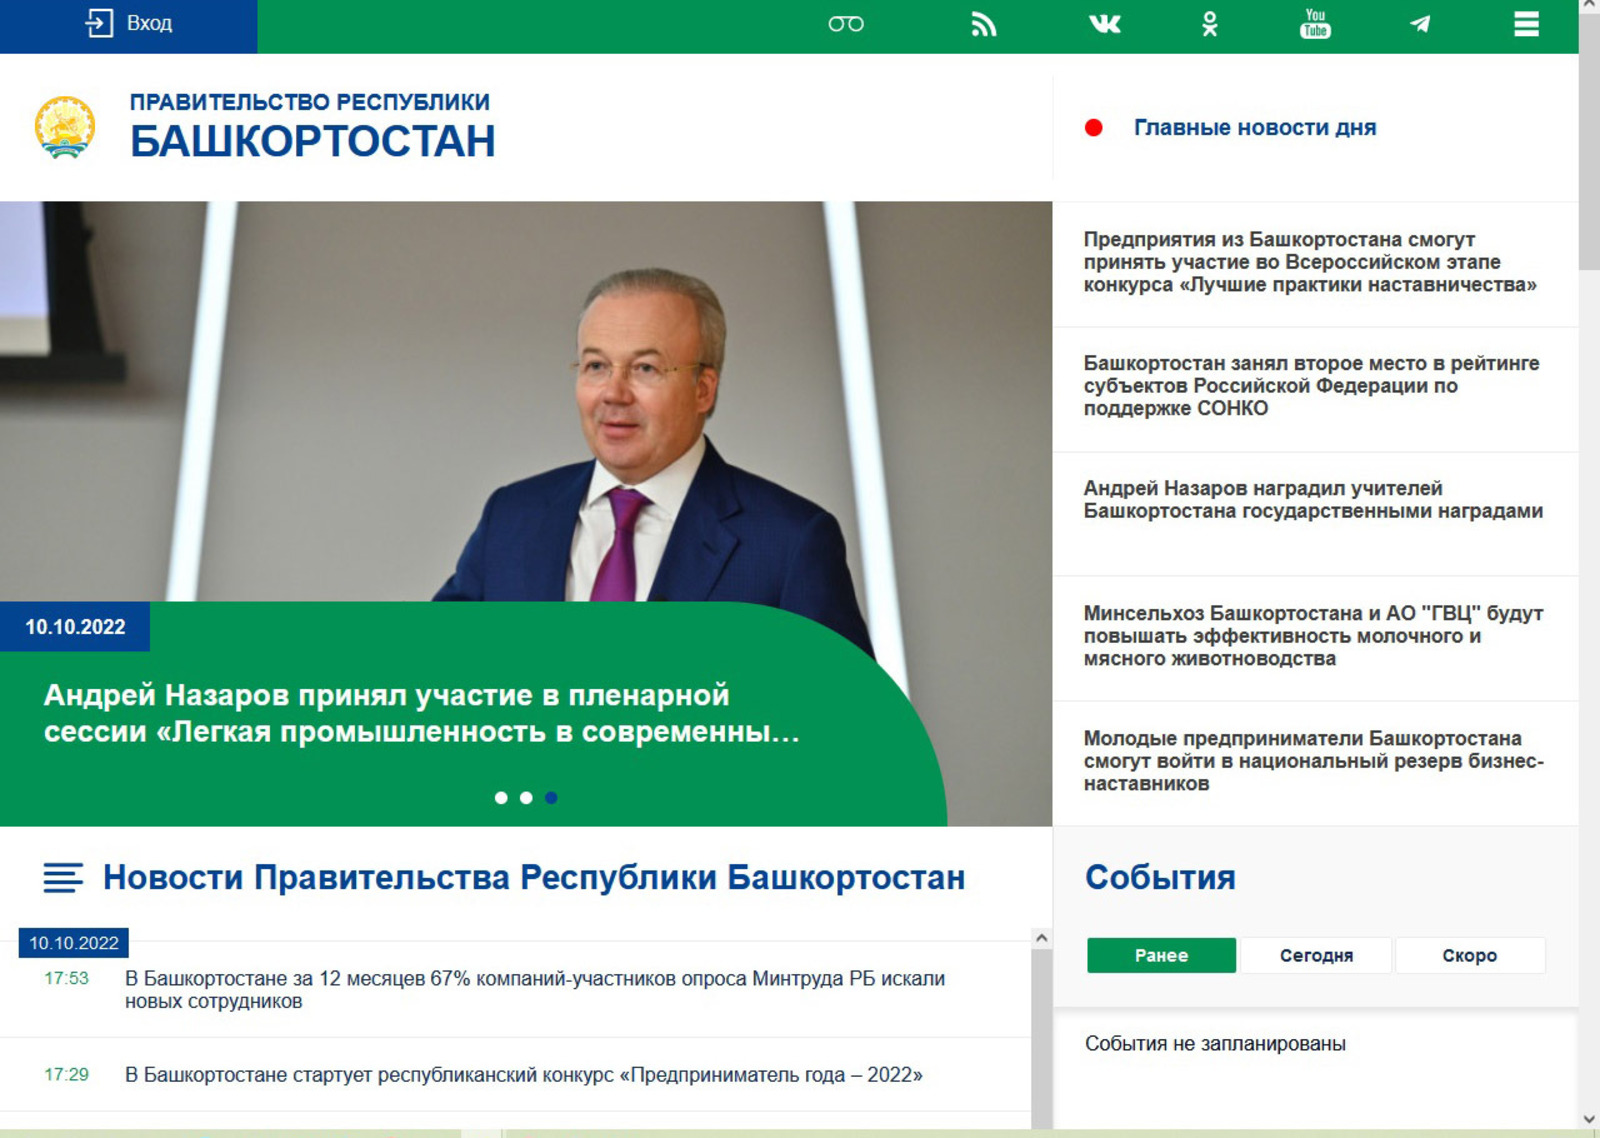 Сайт правительства рб. Правительство РБ. Правительство Республики Башкортостан 2017 году. Официальное открытие.